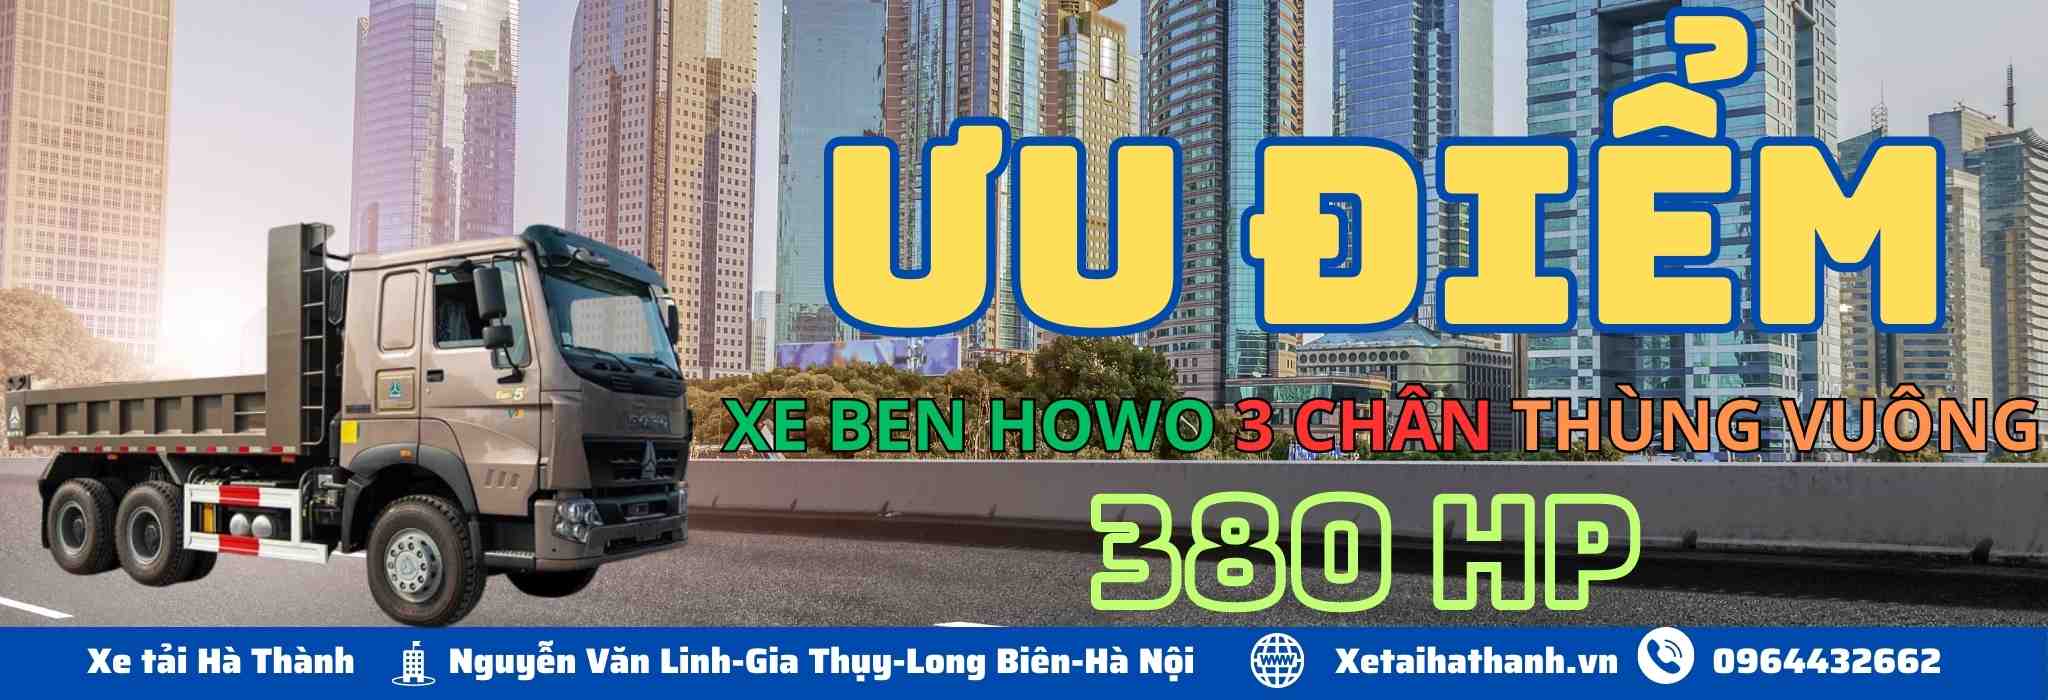 uu-diem-xe-ben-howo-3-chan-thung-vuong